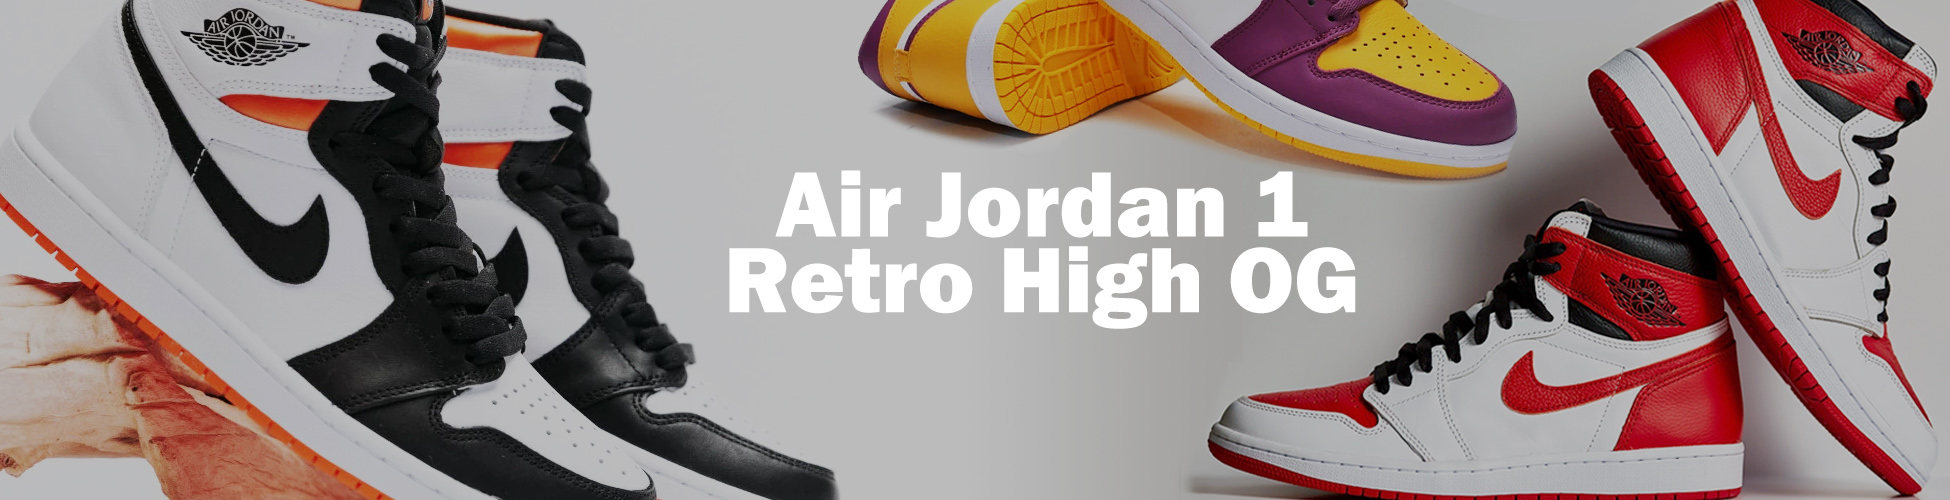 Кроссовки Air Jordan 1 Retro High OG